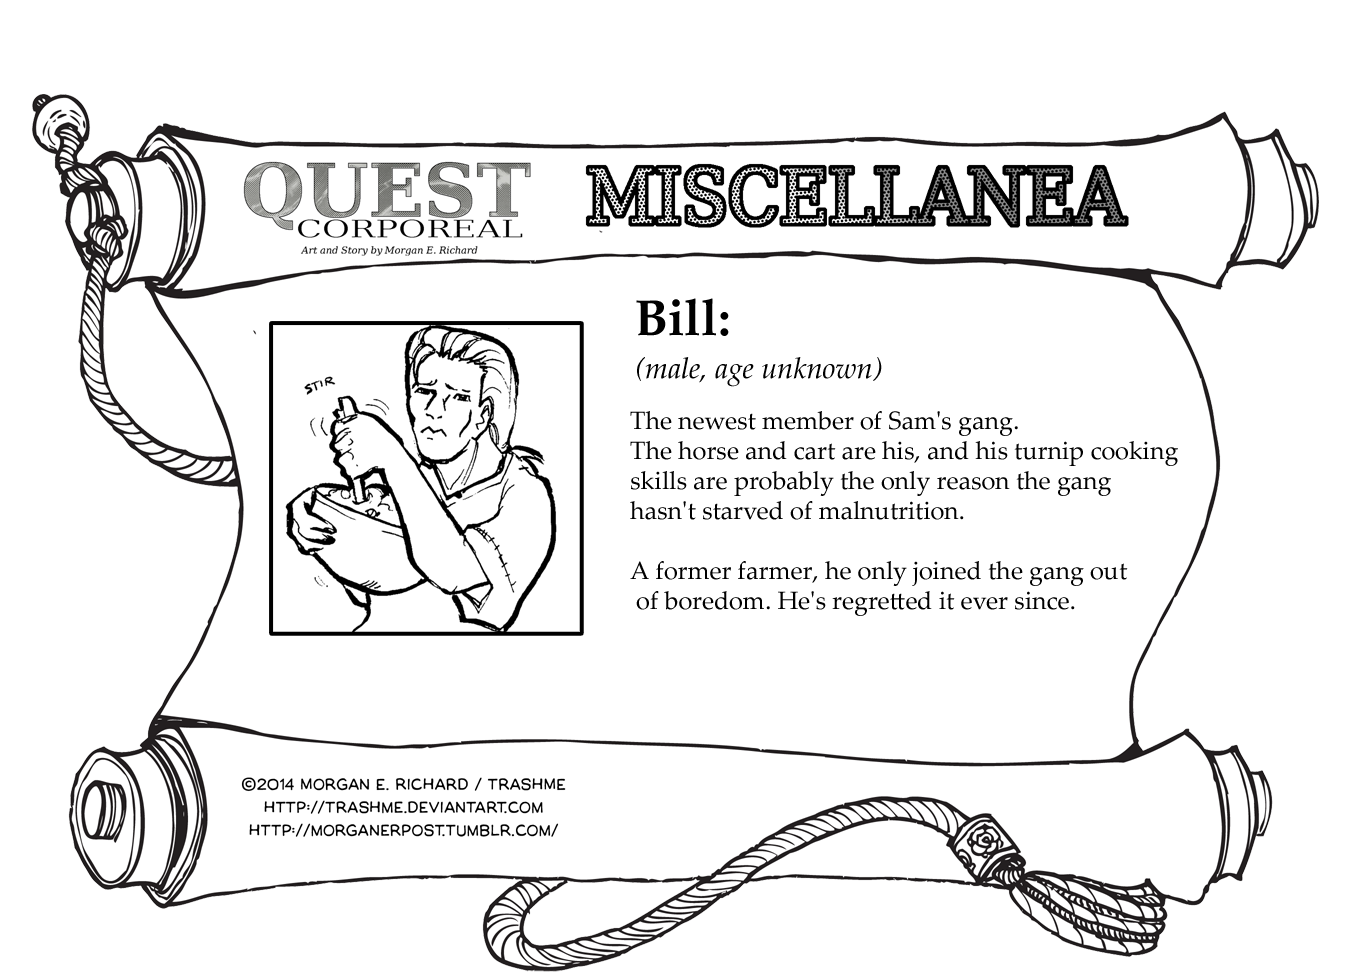 Miscellanea Corporeal: Bill